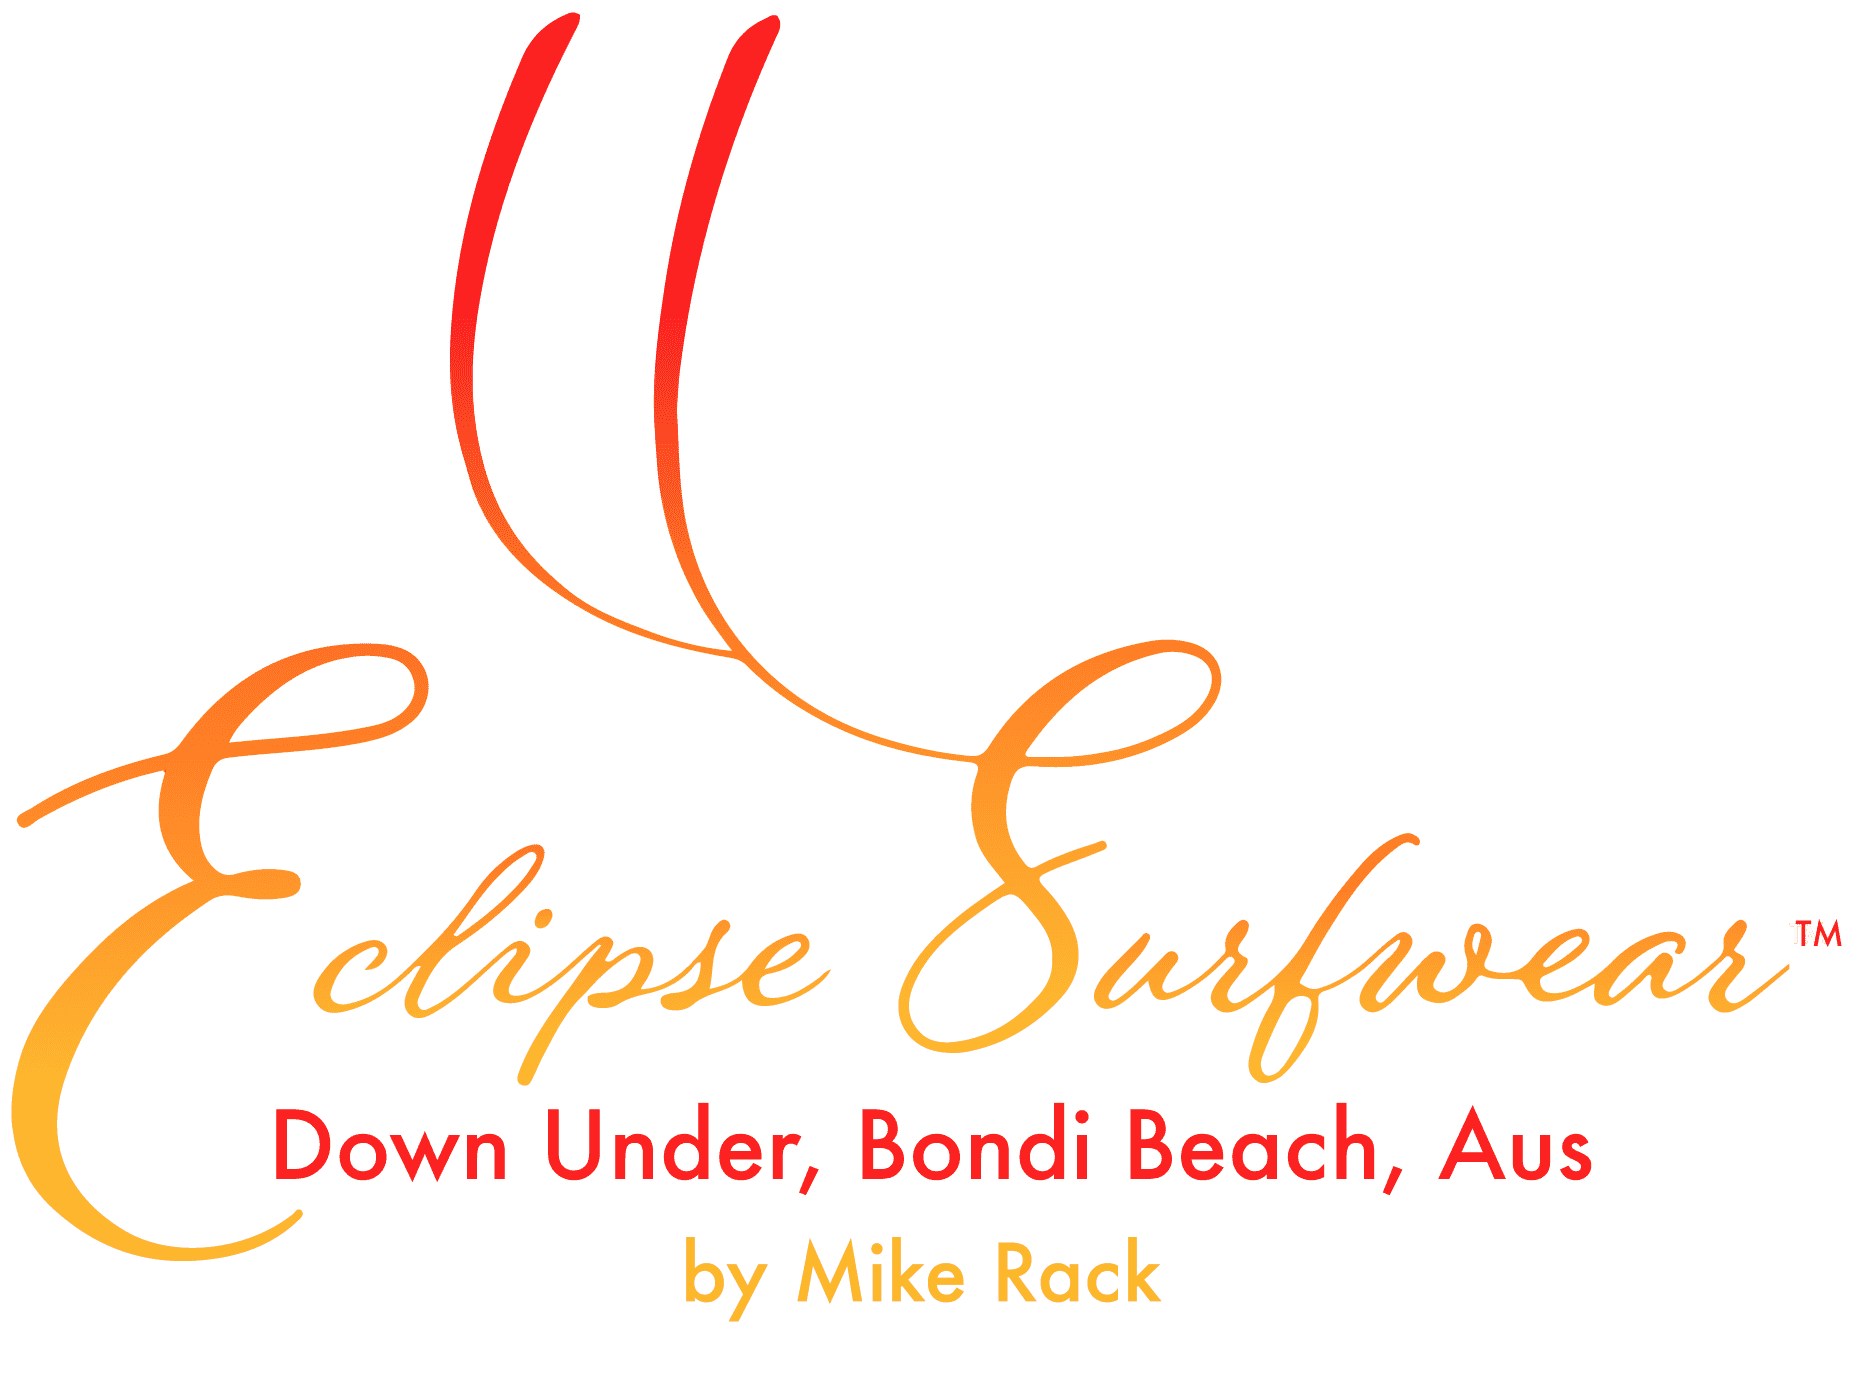 Eclipse Surfwear